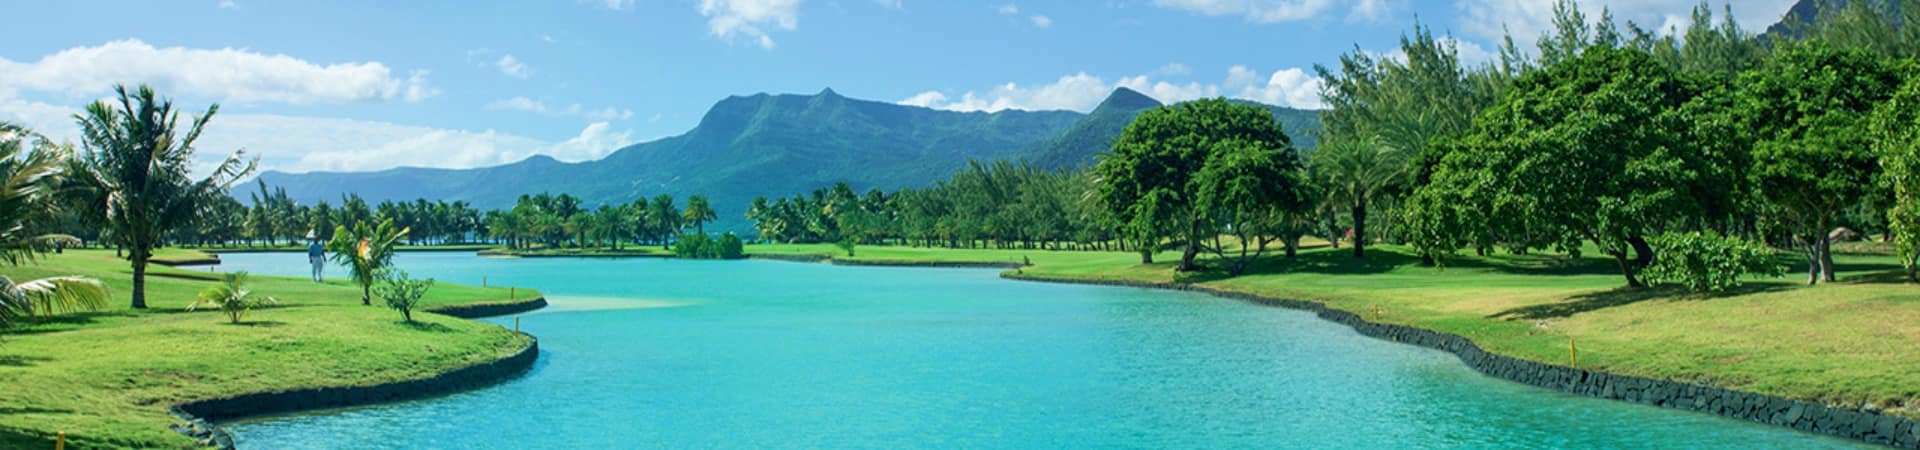 Mauricius paradis beachcomber lago